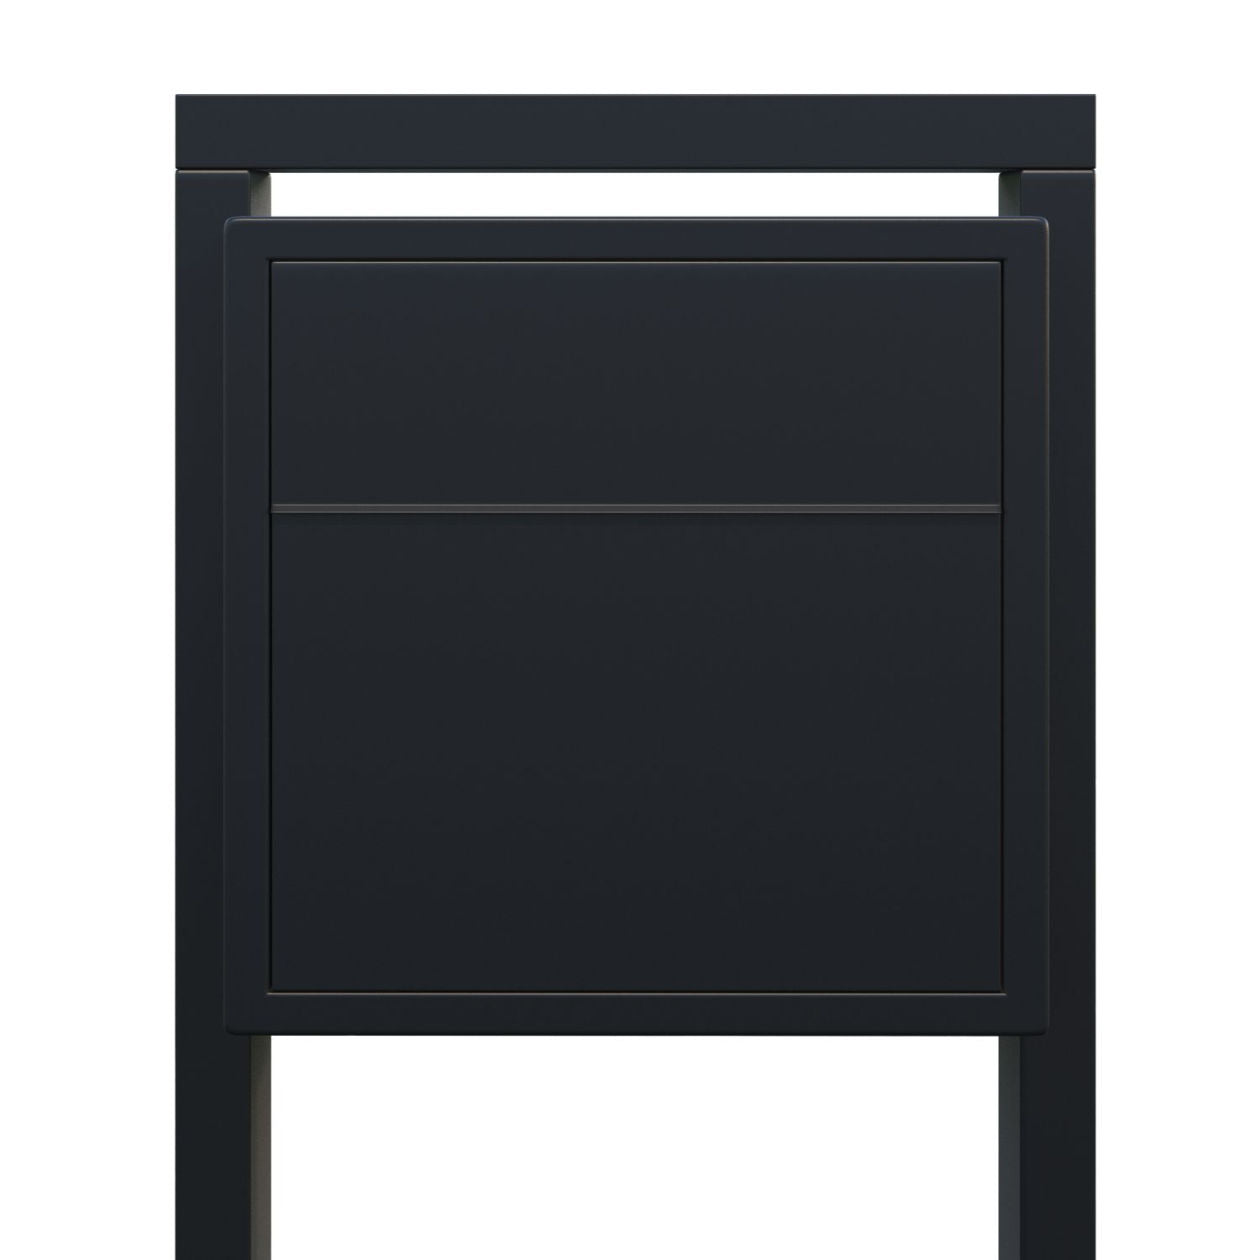 BURG 1 Standalone - Post-mounted locking mailbox in black